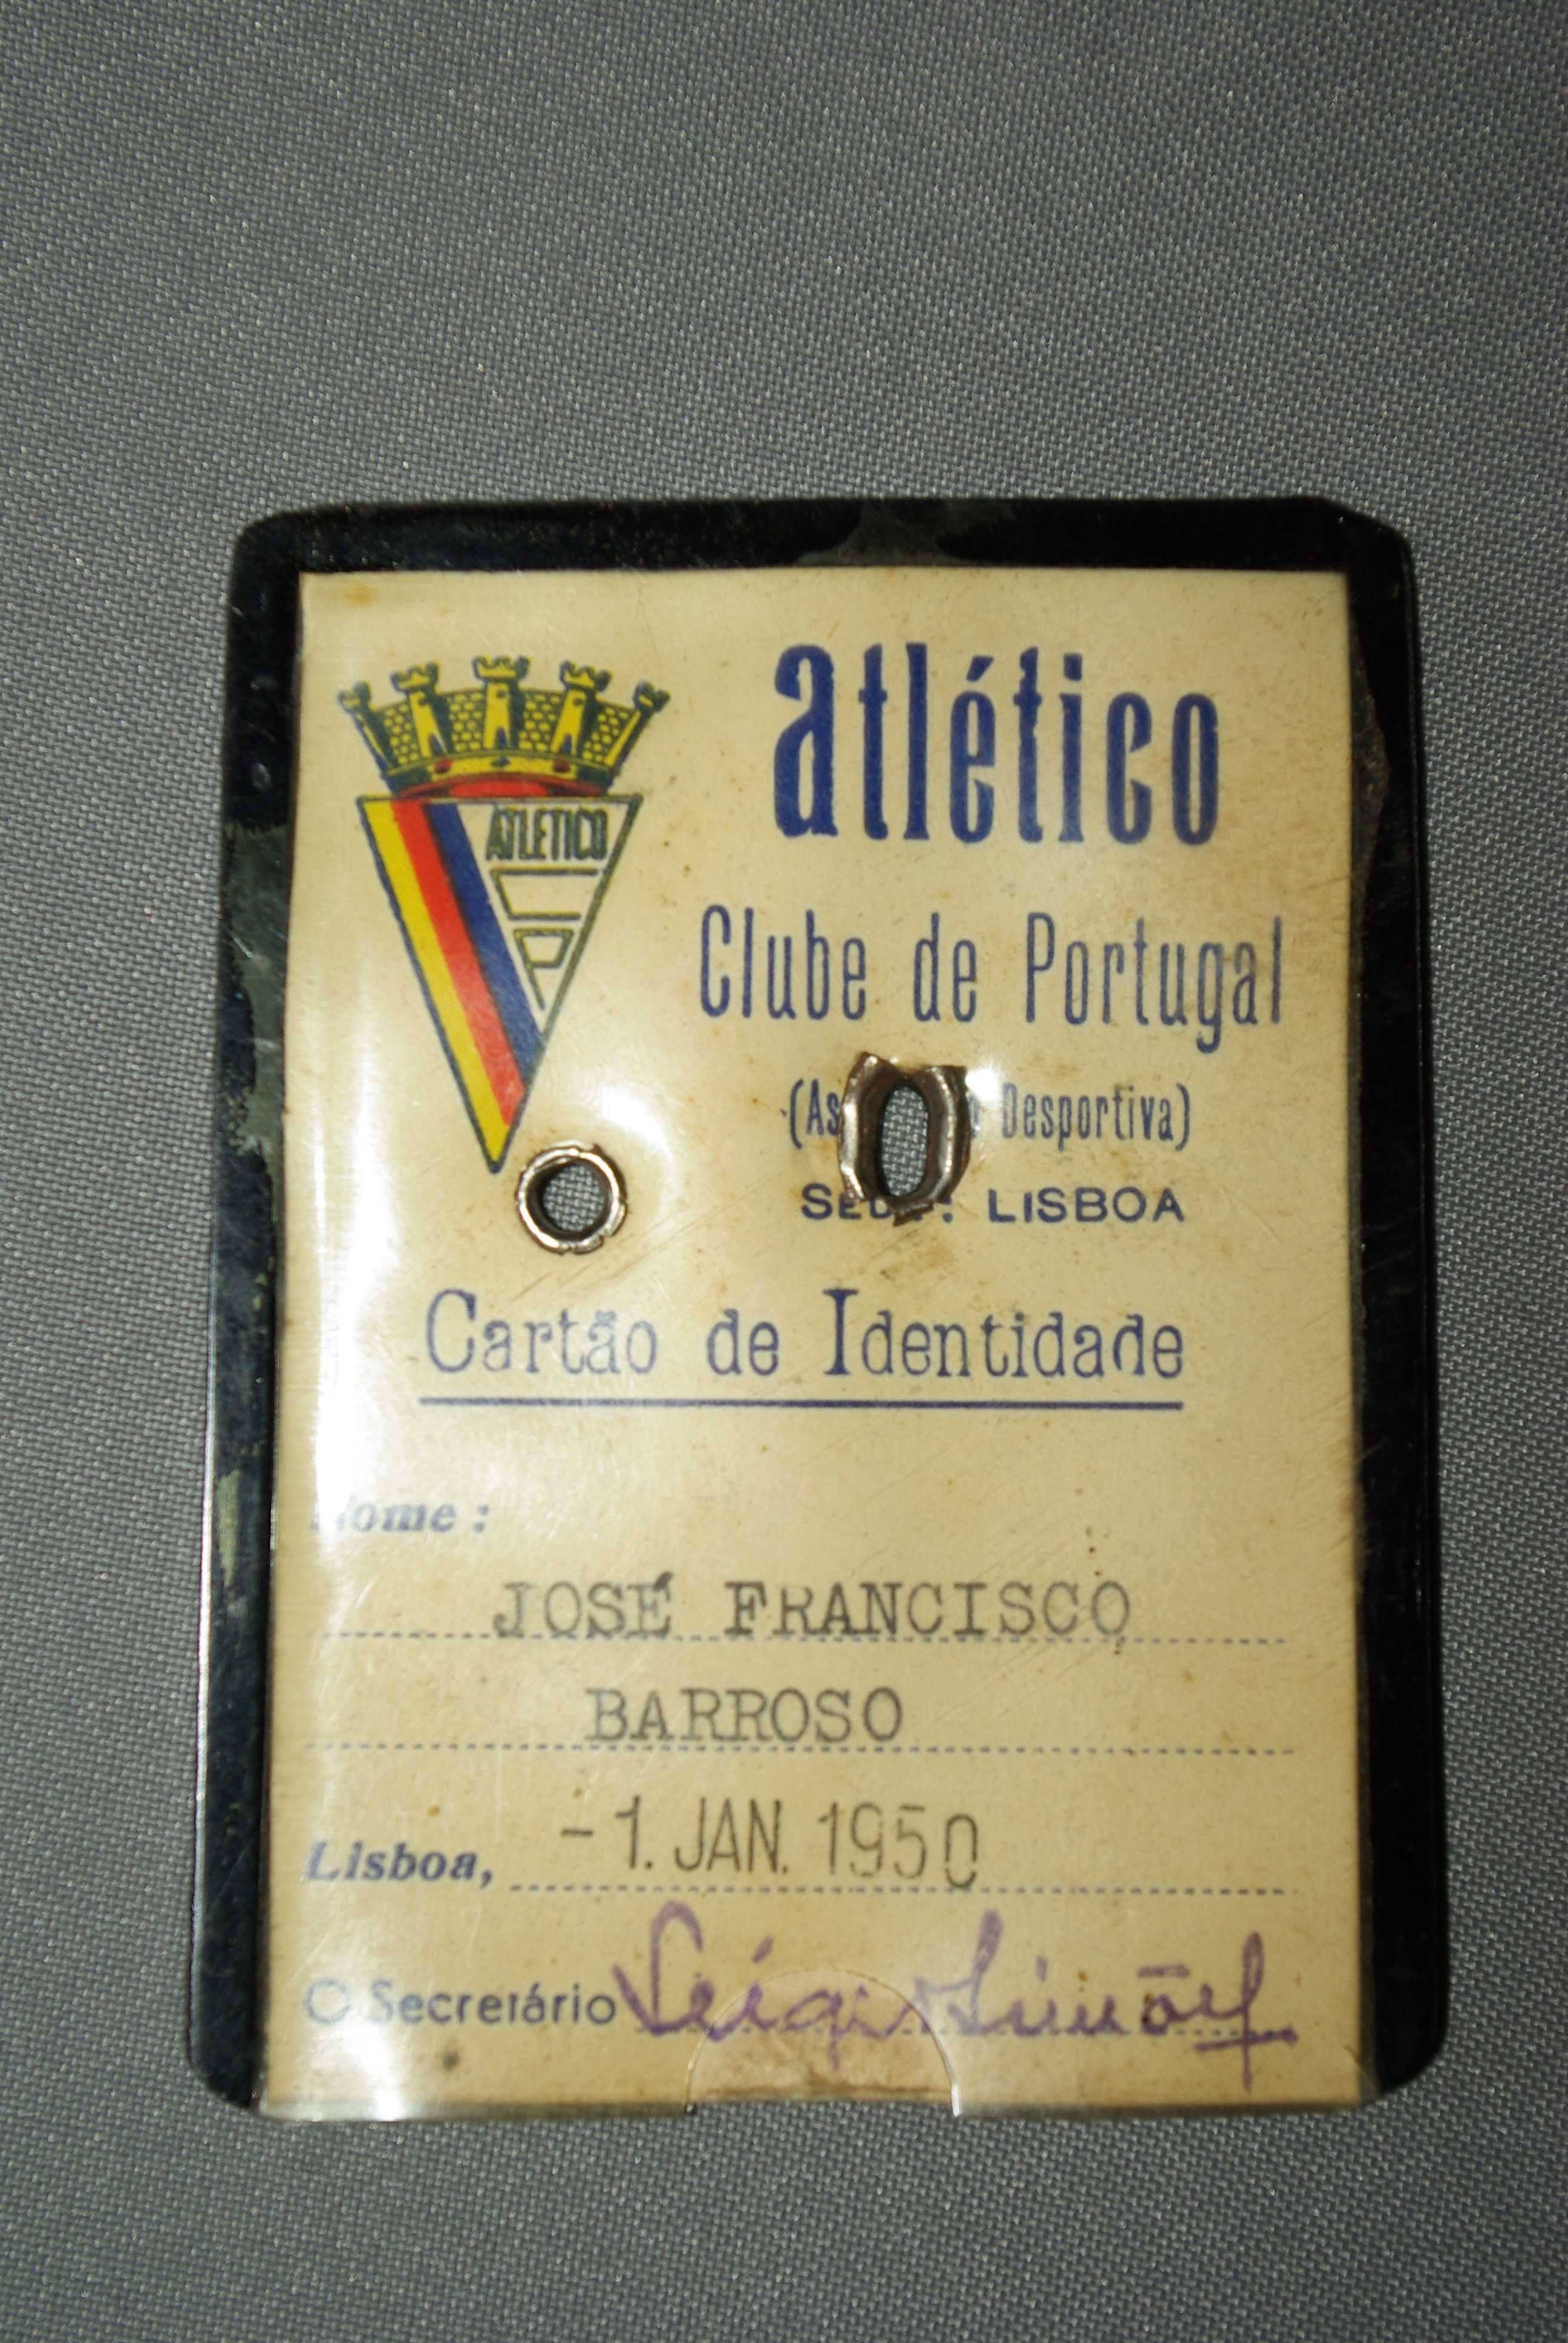 Cartao de sócio do Atlético Clube de Portugal, 1950